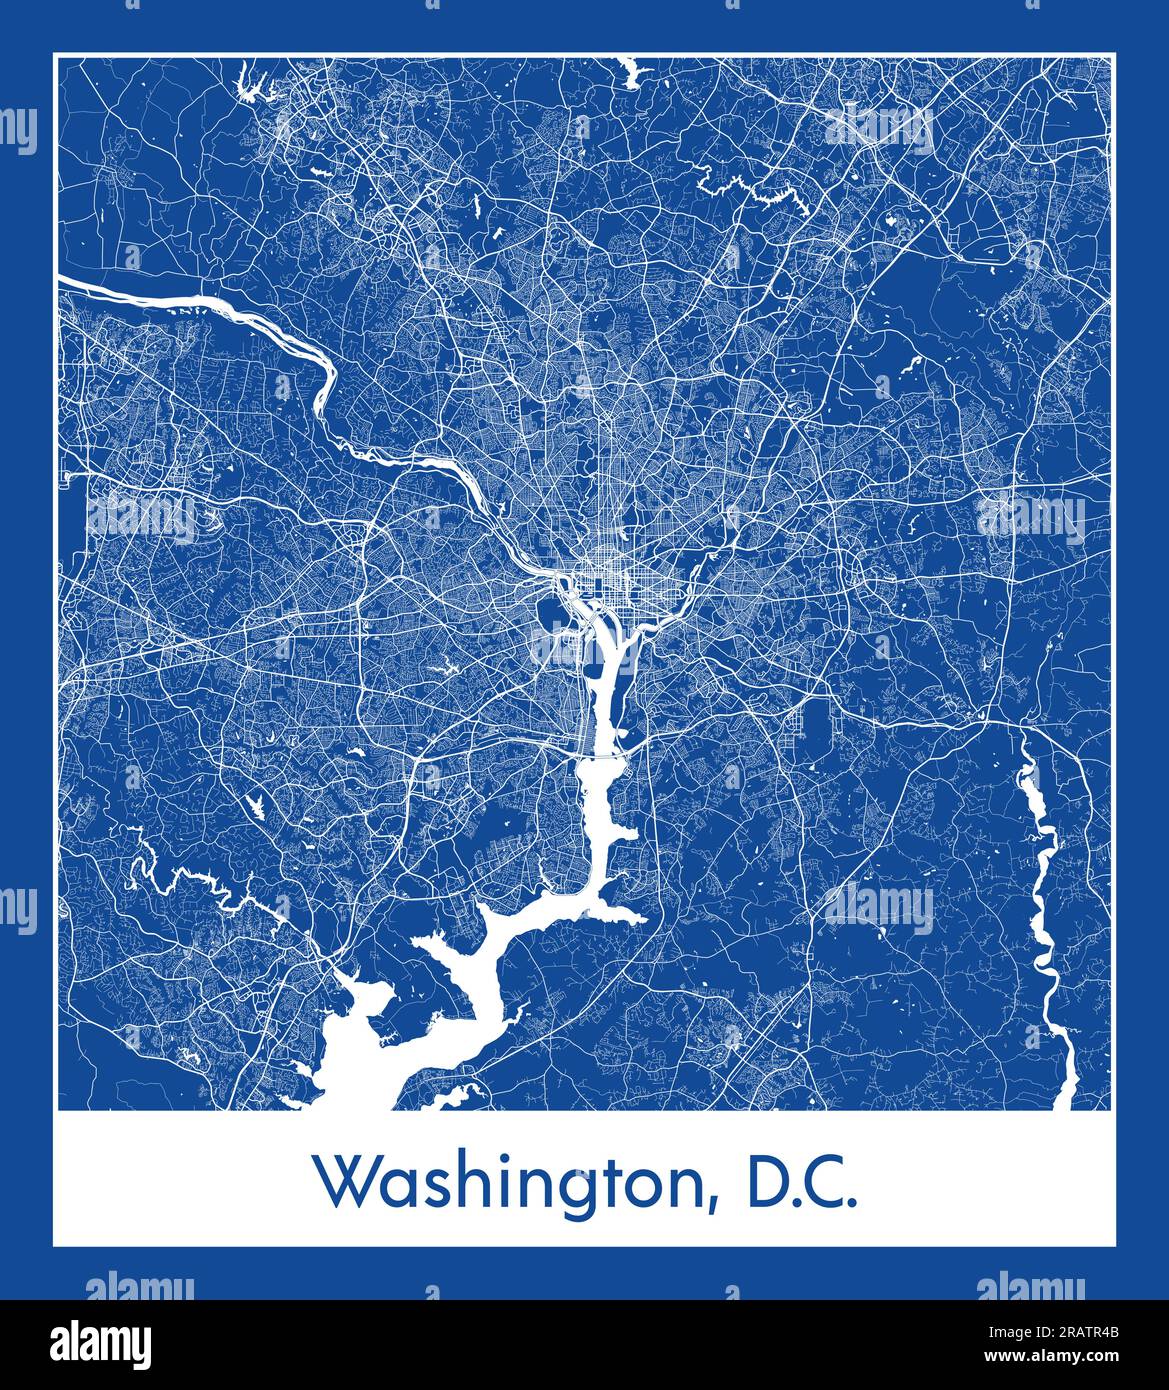 Washington D. C. États-Unis Amérique du Nord carte de la ville illustration vectorielle d'impression bleue Illustration de Vecteur